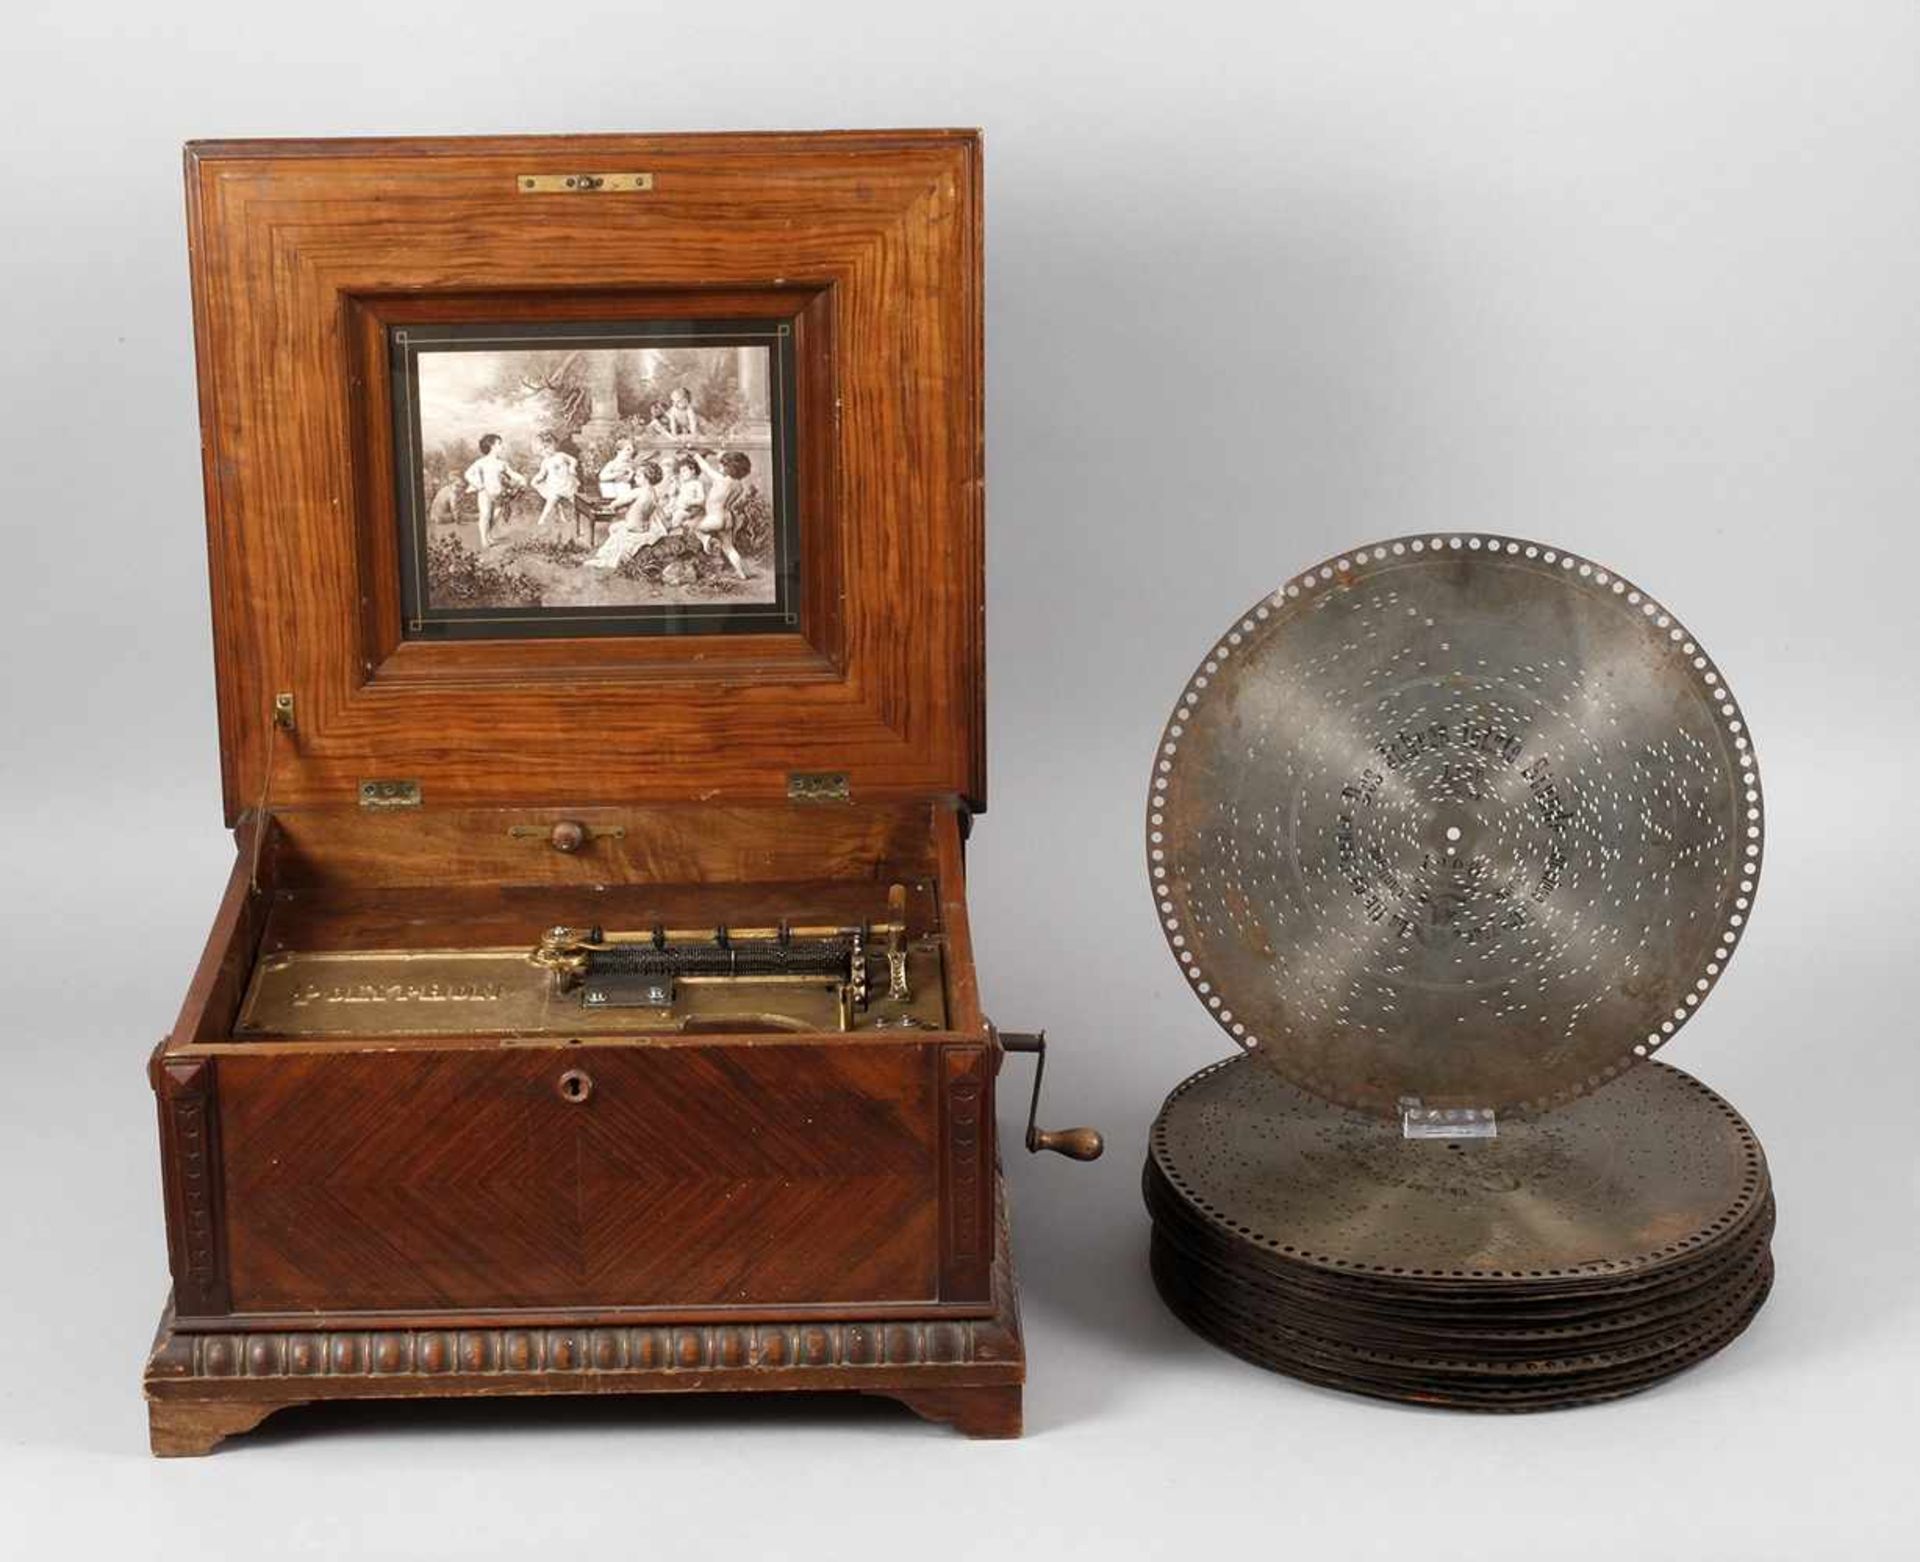 Große Plattenspieldose Polyphonum 1890, gemarkt, Seriennummer 121998?, palisanderfurniertes Gehäuse,